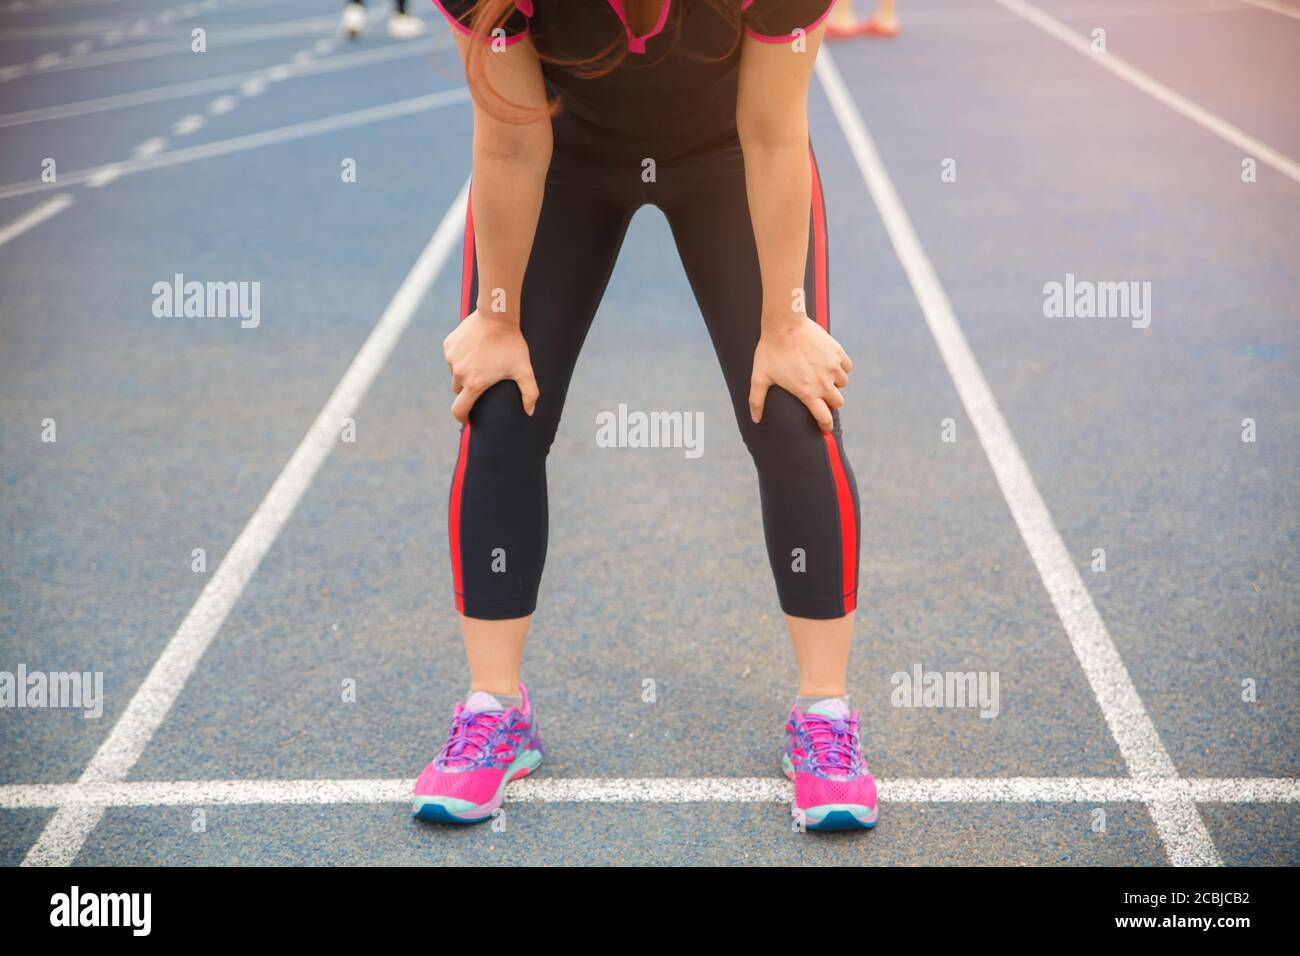 Atleta di runner femminile lesioni al ginocchio e dolore. Donna che soffre di ginocchio doloroso mentre corre sulla pista blu gommata. Foto Stock